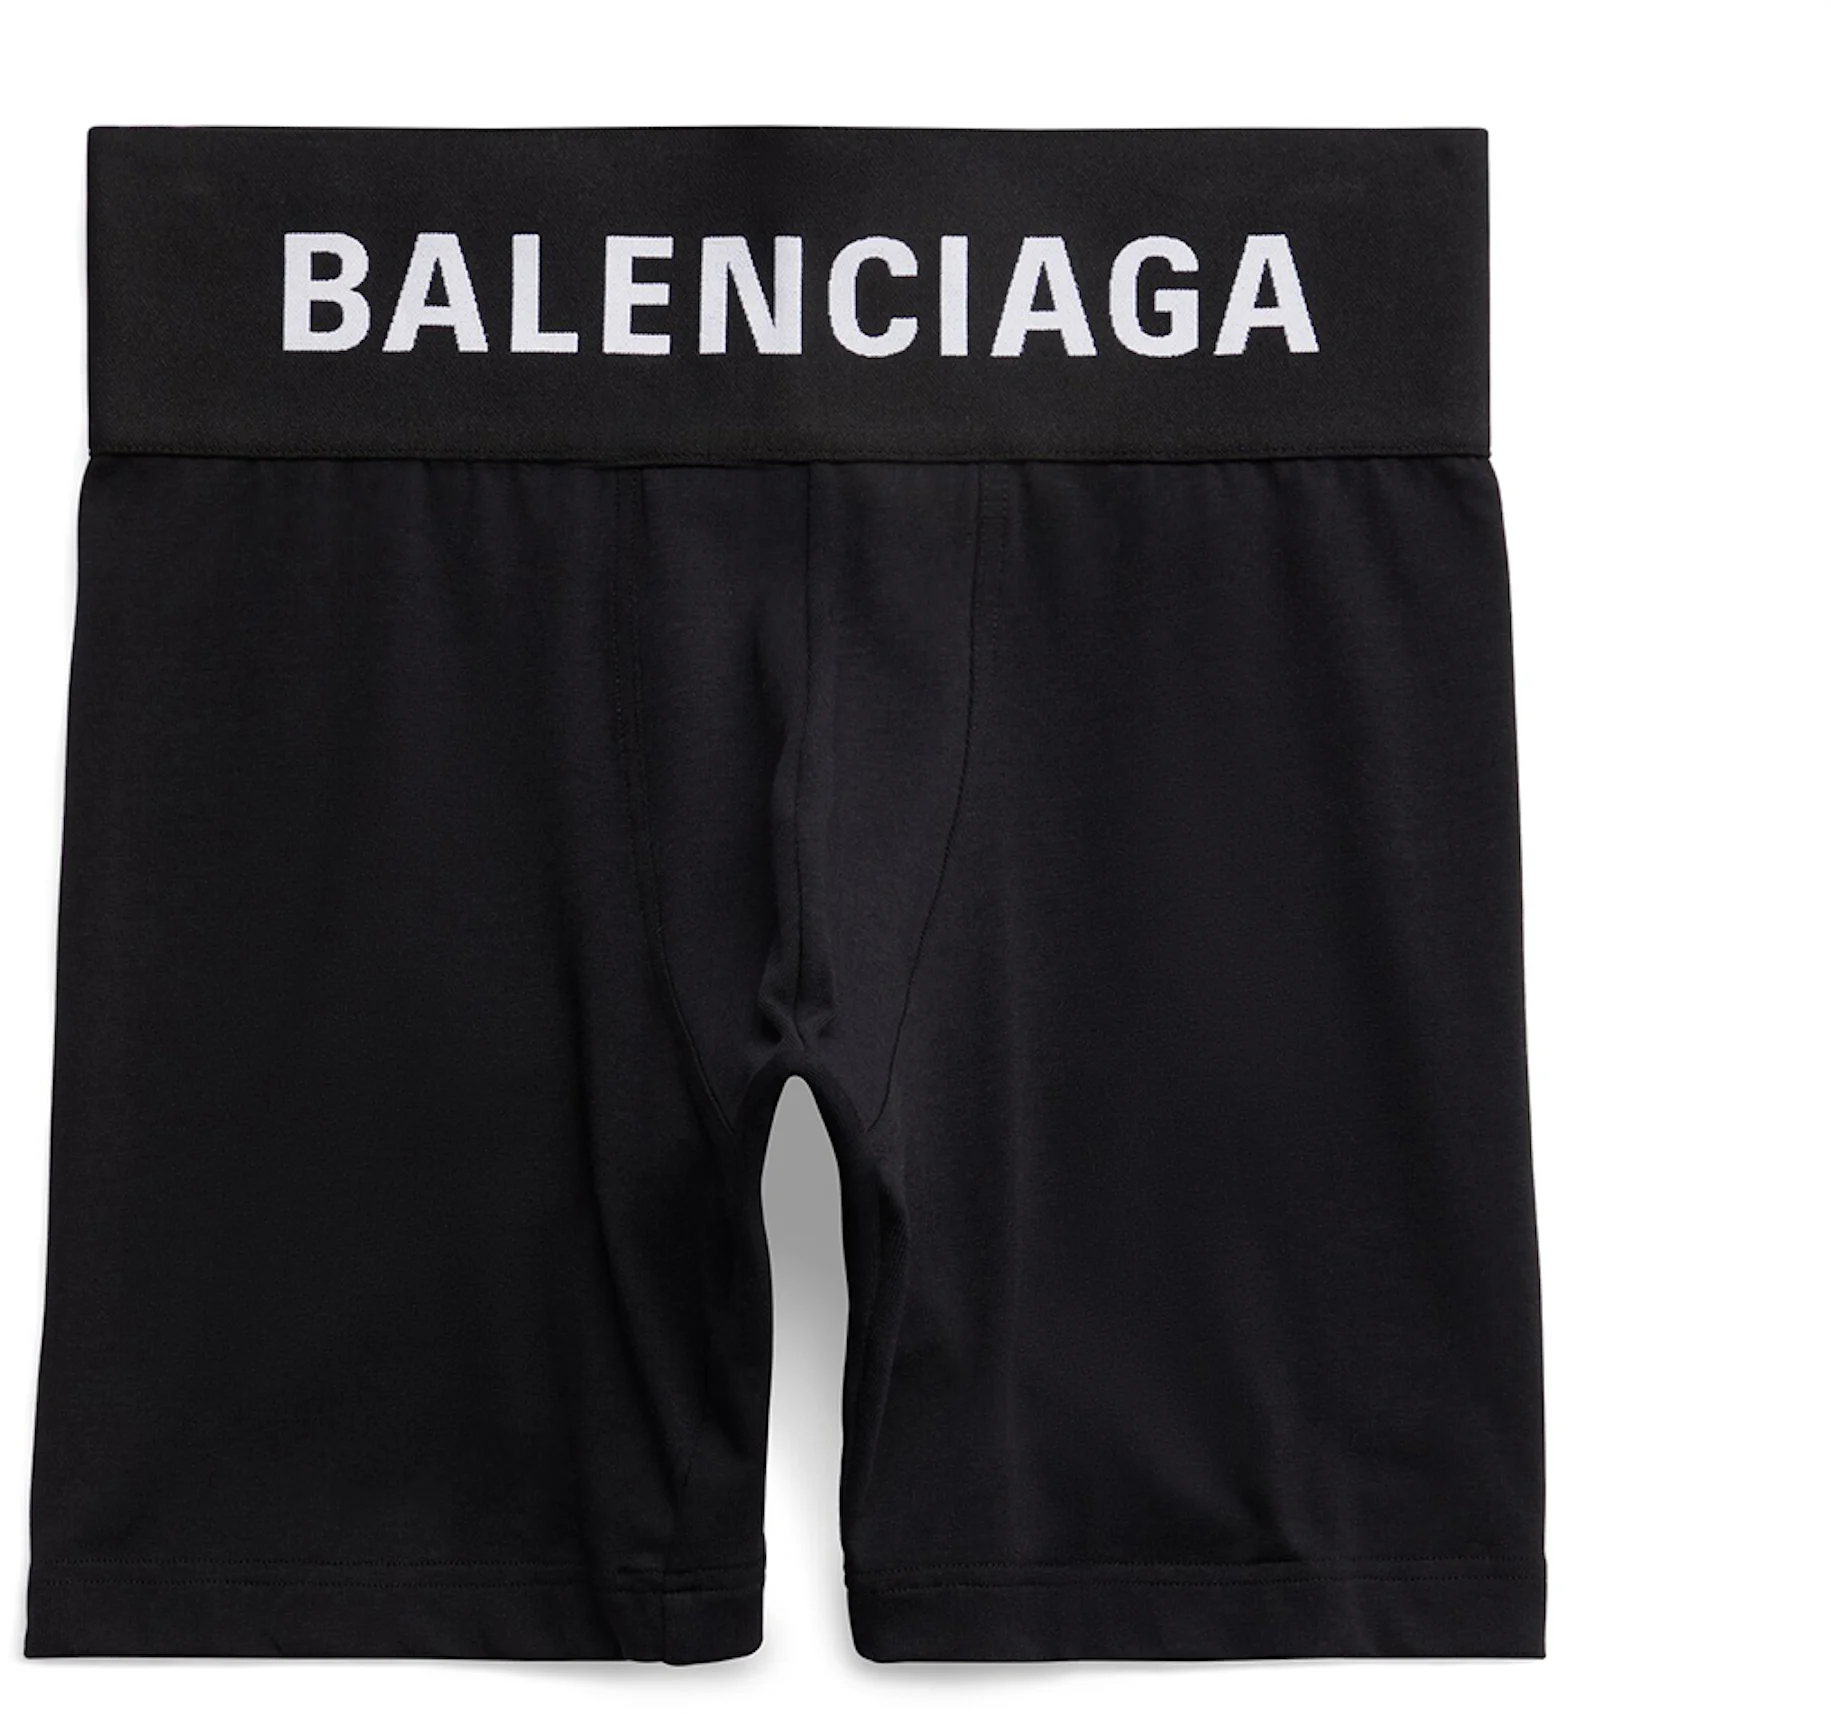 Balenciaga Men's Midway Boxer Briefs Black